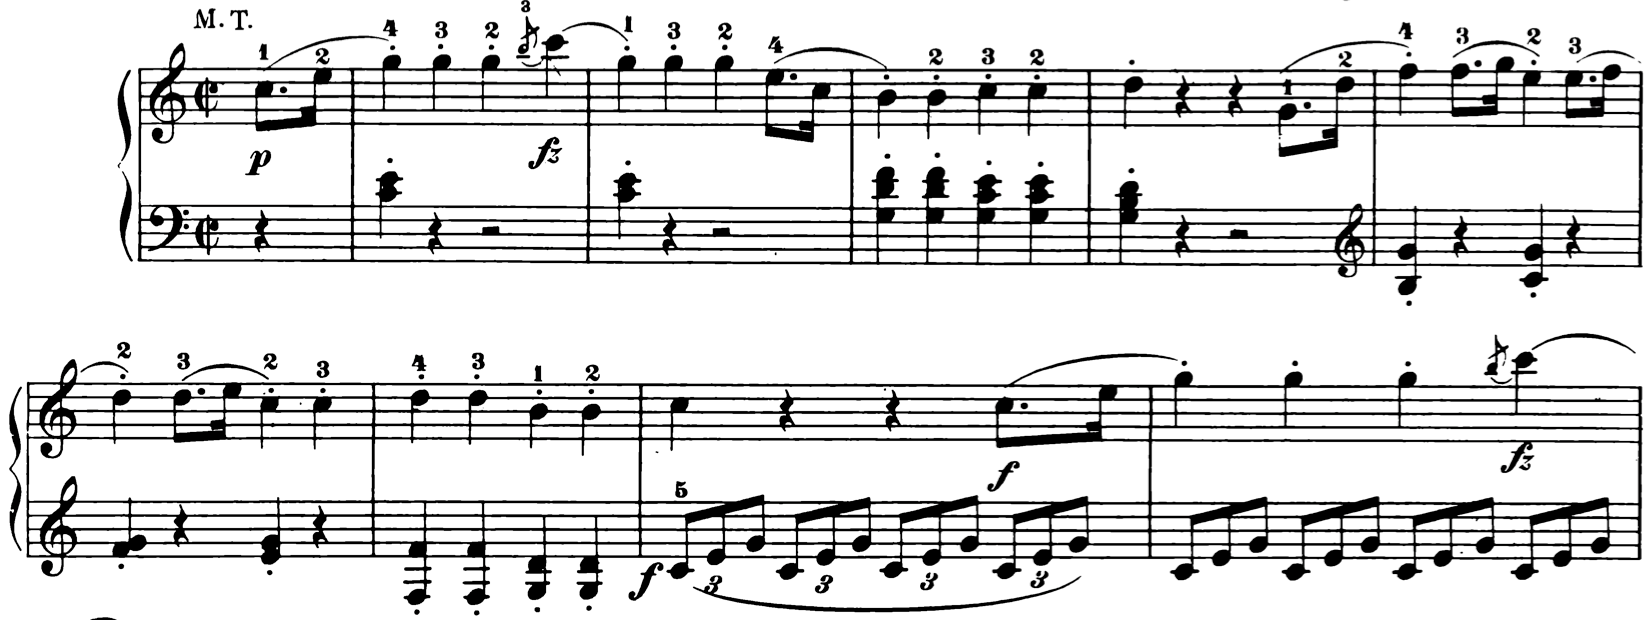 Haydn example